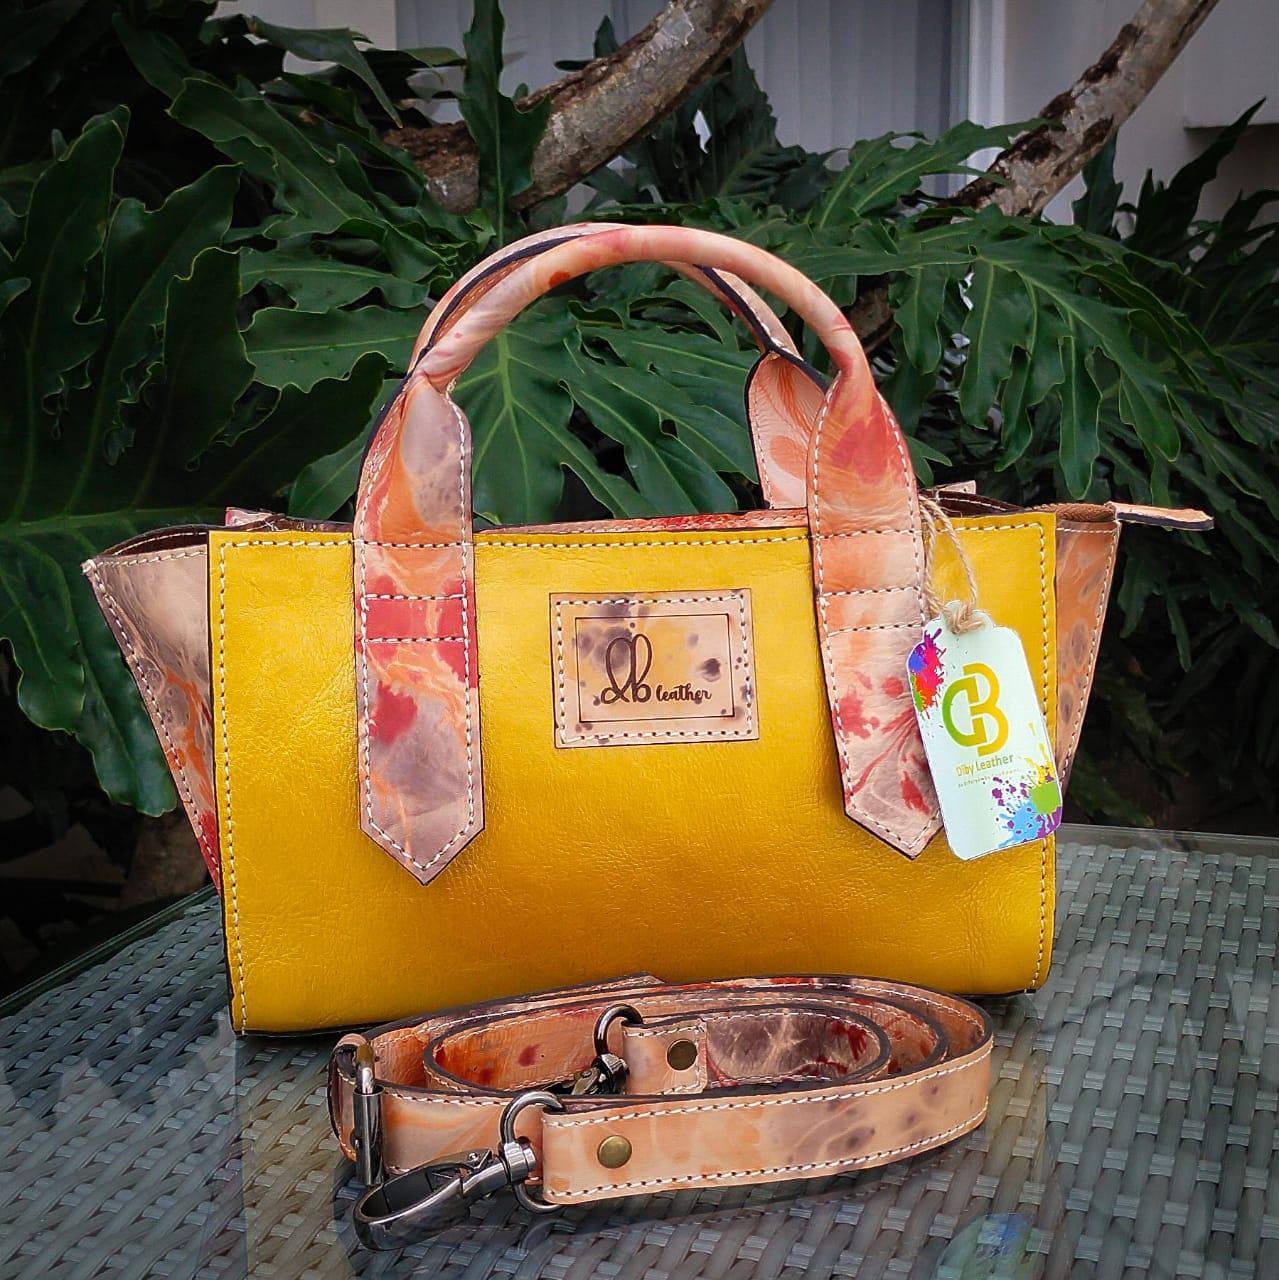 Tas Kulit Diby Debora Handbag Full leather ebru – taskulitdiby.com